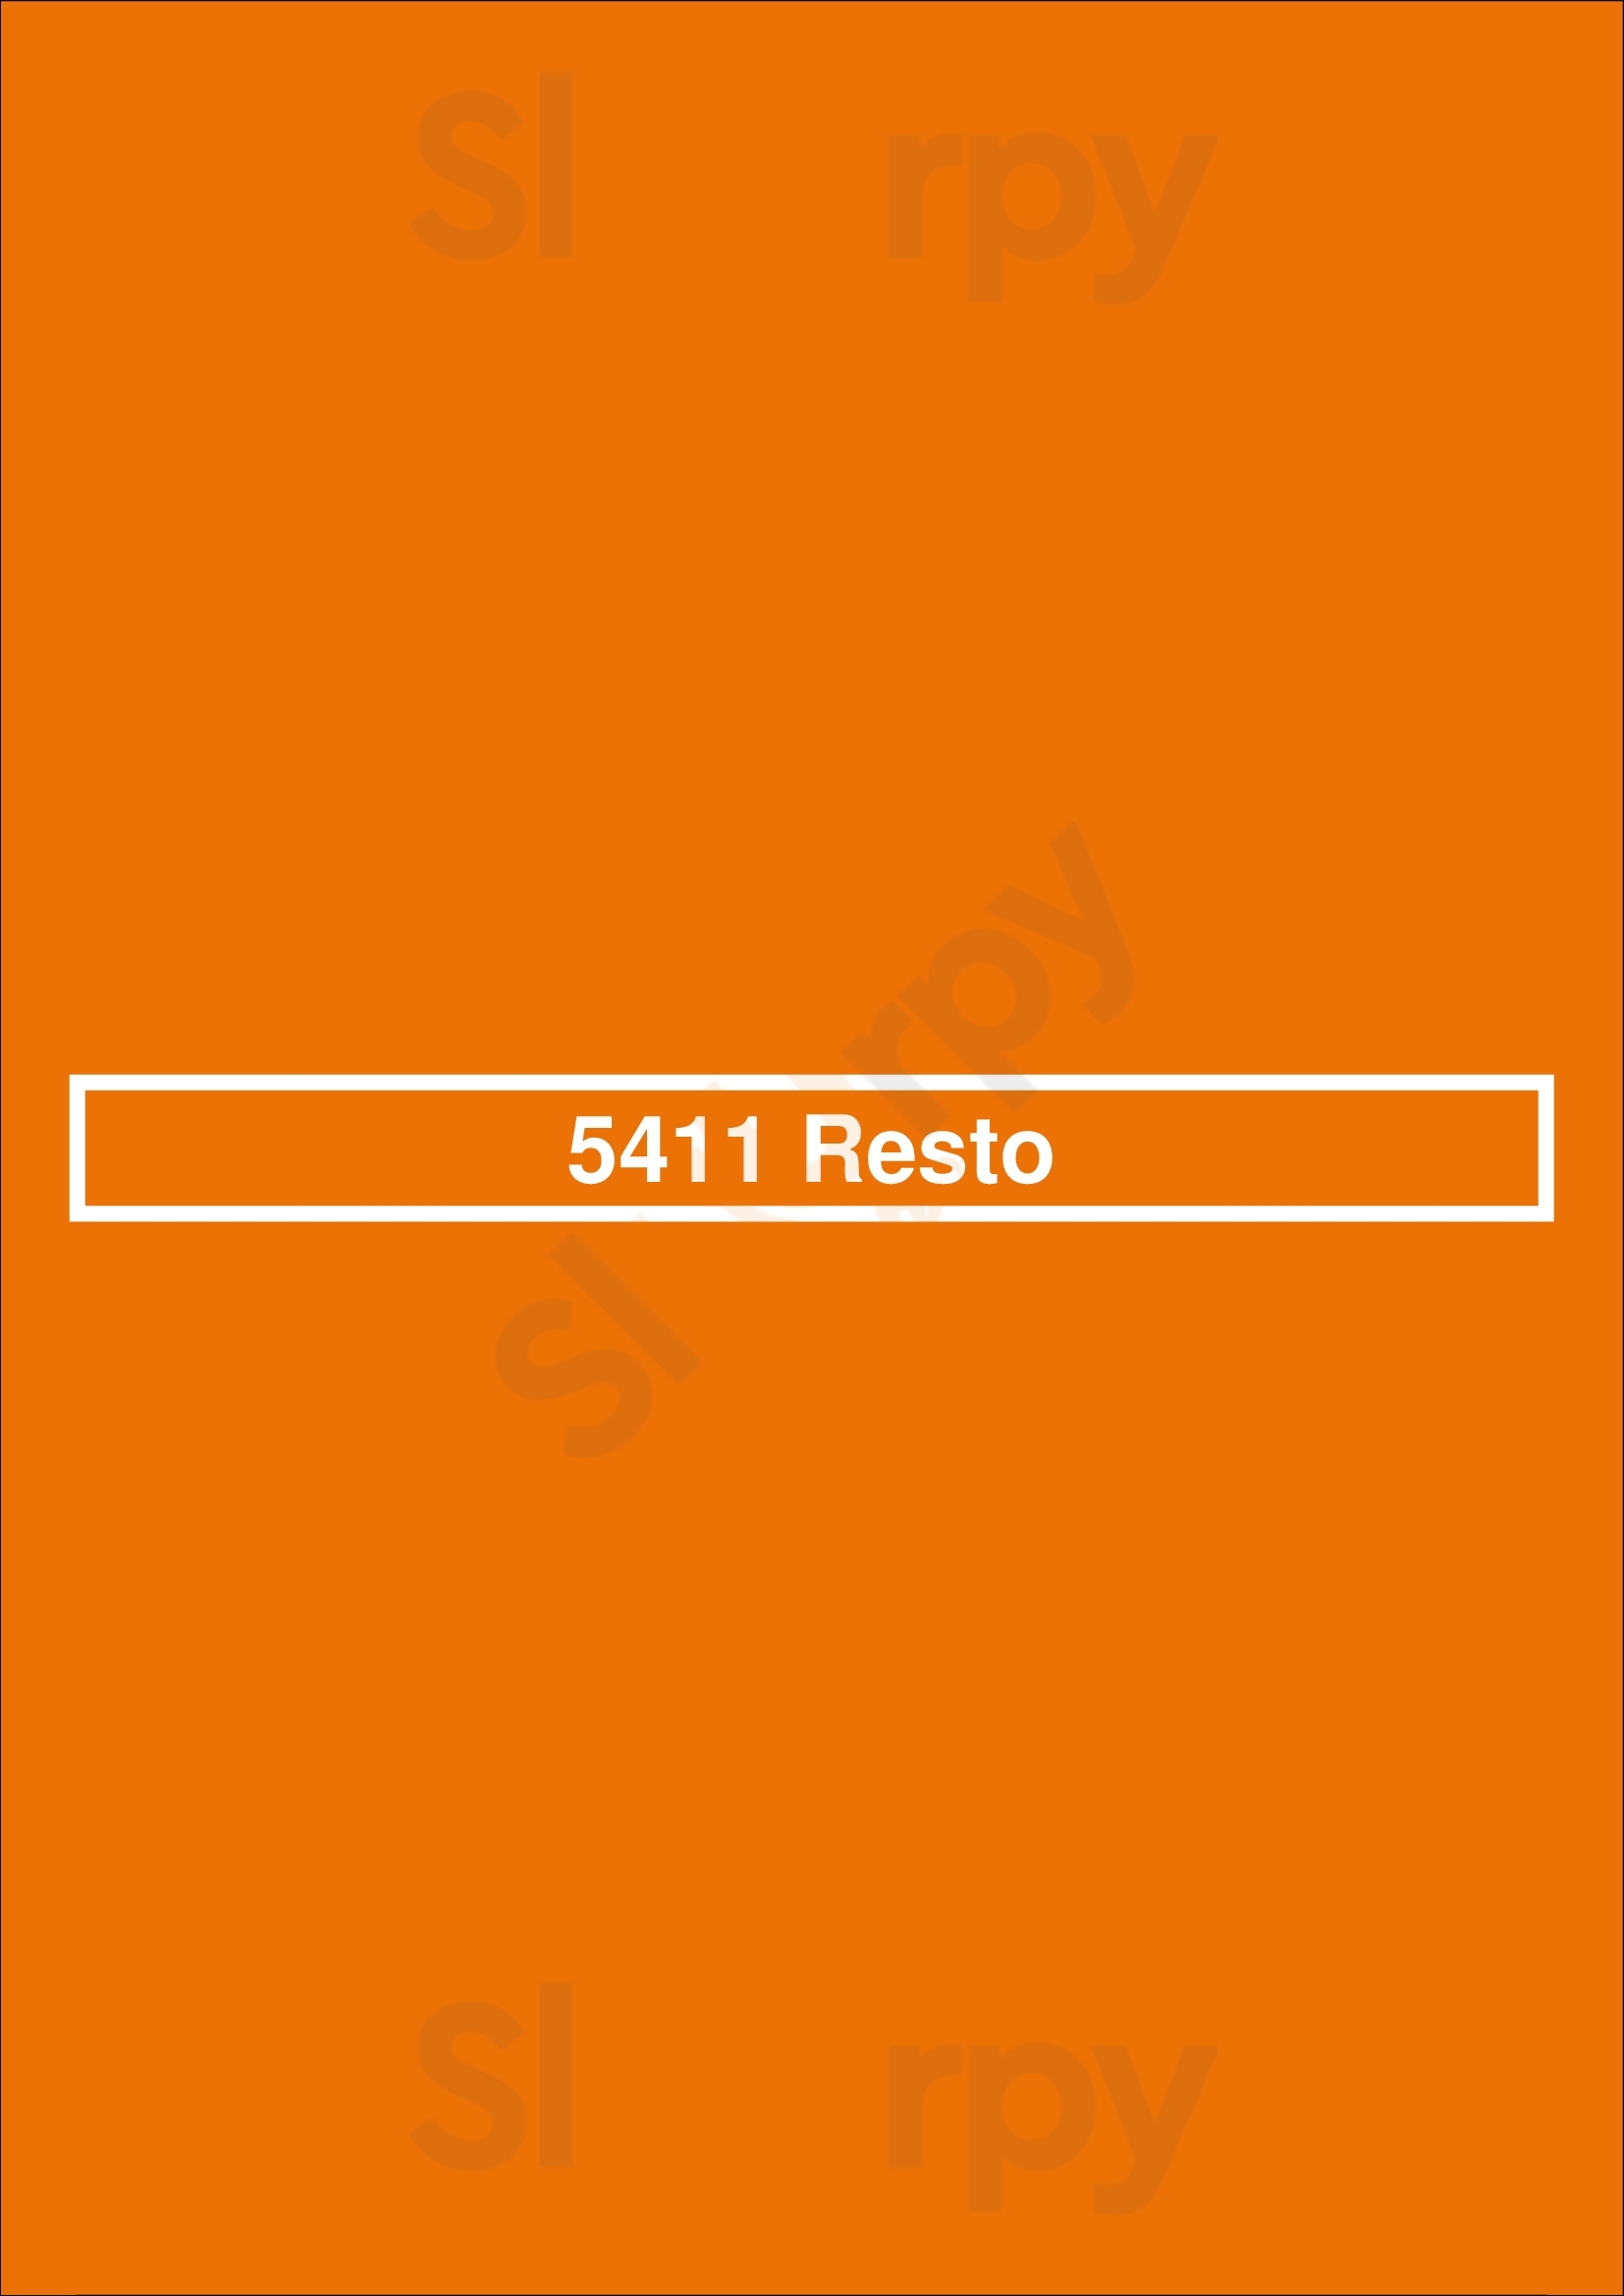 5411 Resto Buenos Aires Menu - 1